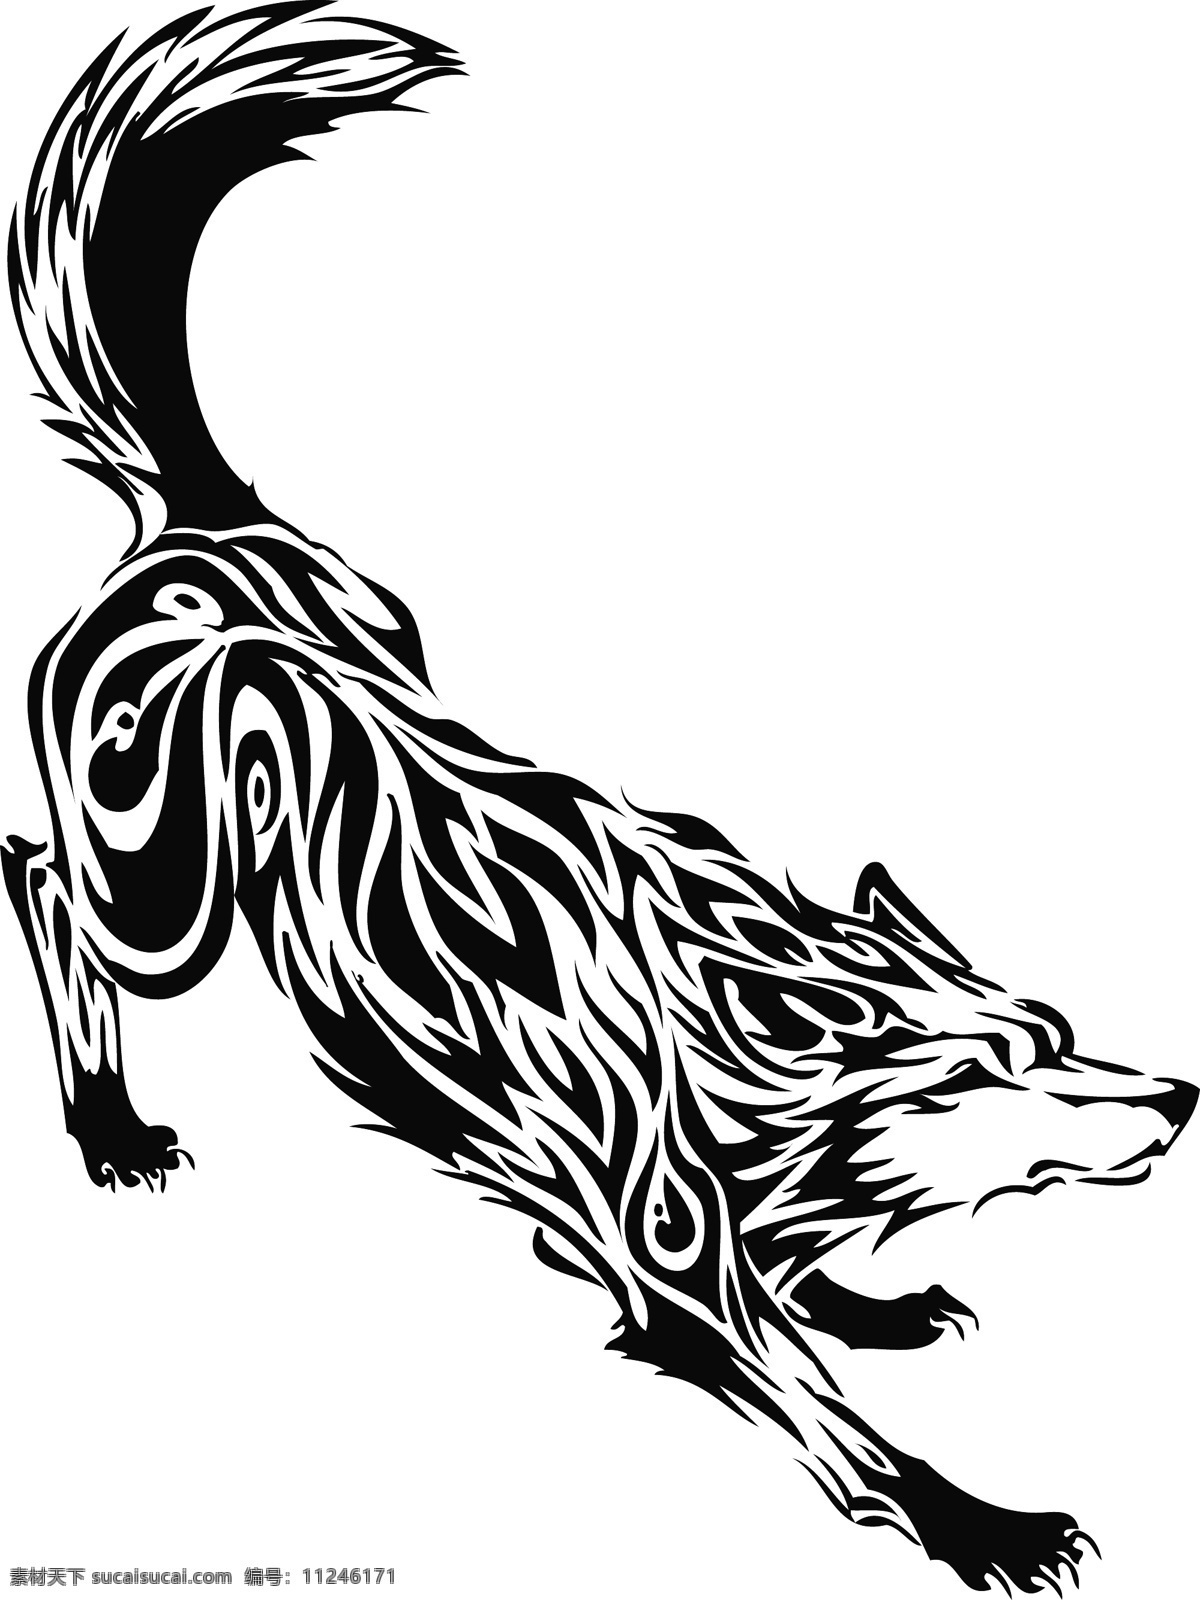 野狼 狼 动物 大灰狼 卡通动物 野生动物 生物世界 矢量